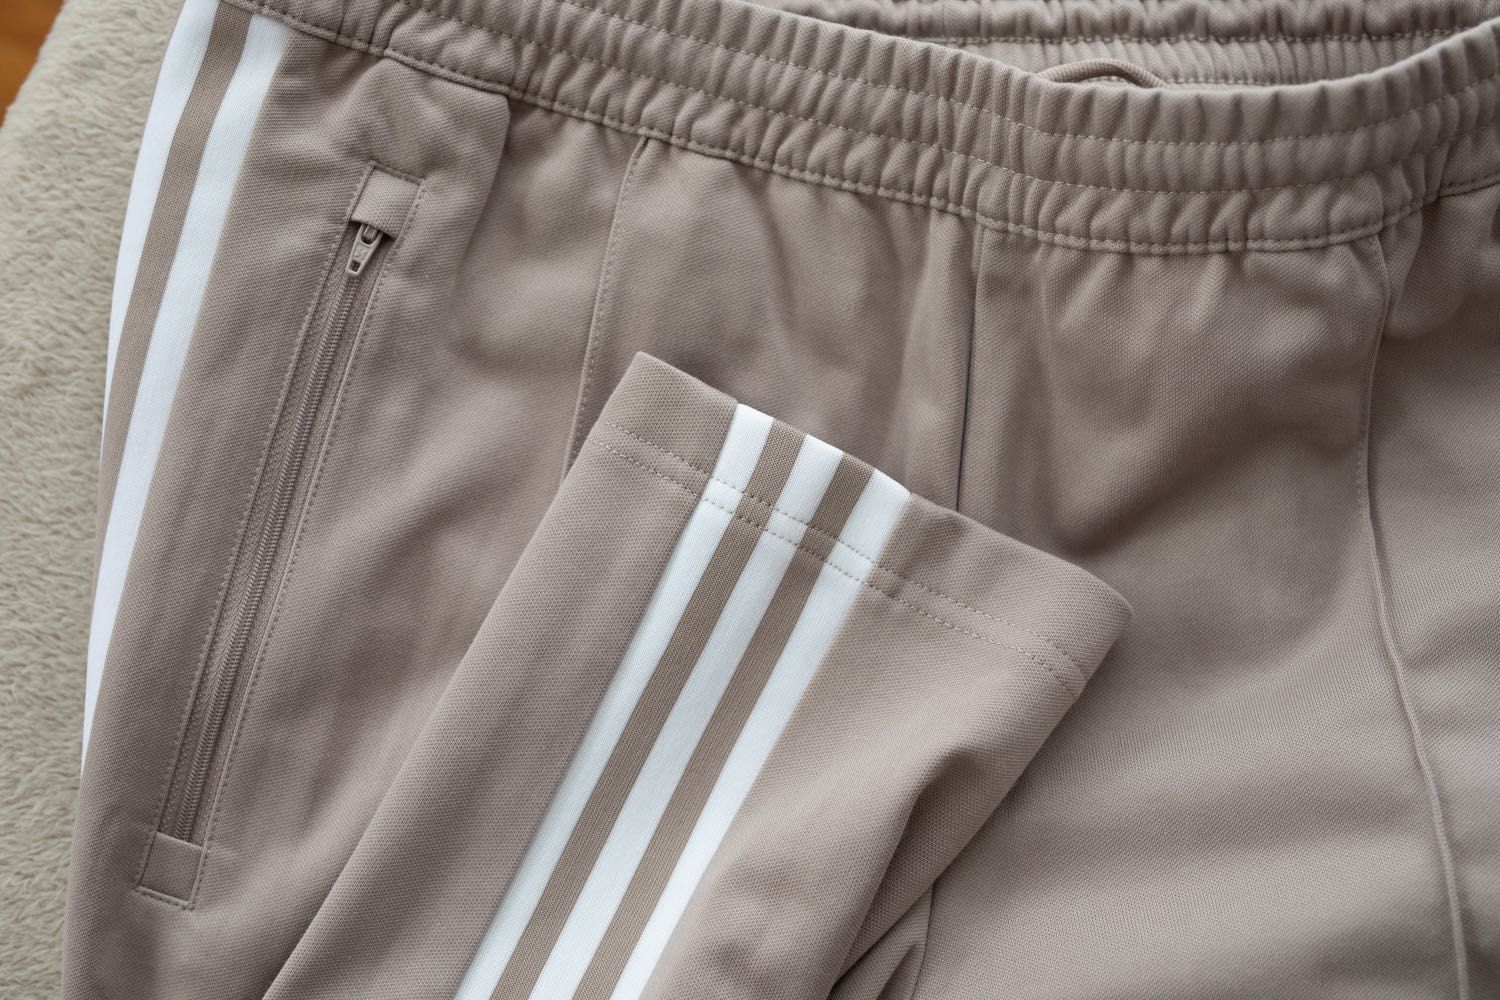 Adidas originals Beckenbauer, spodnie, rozm. M